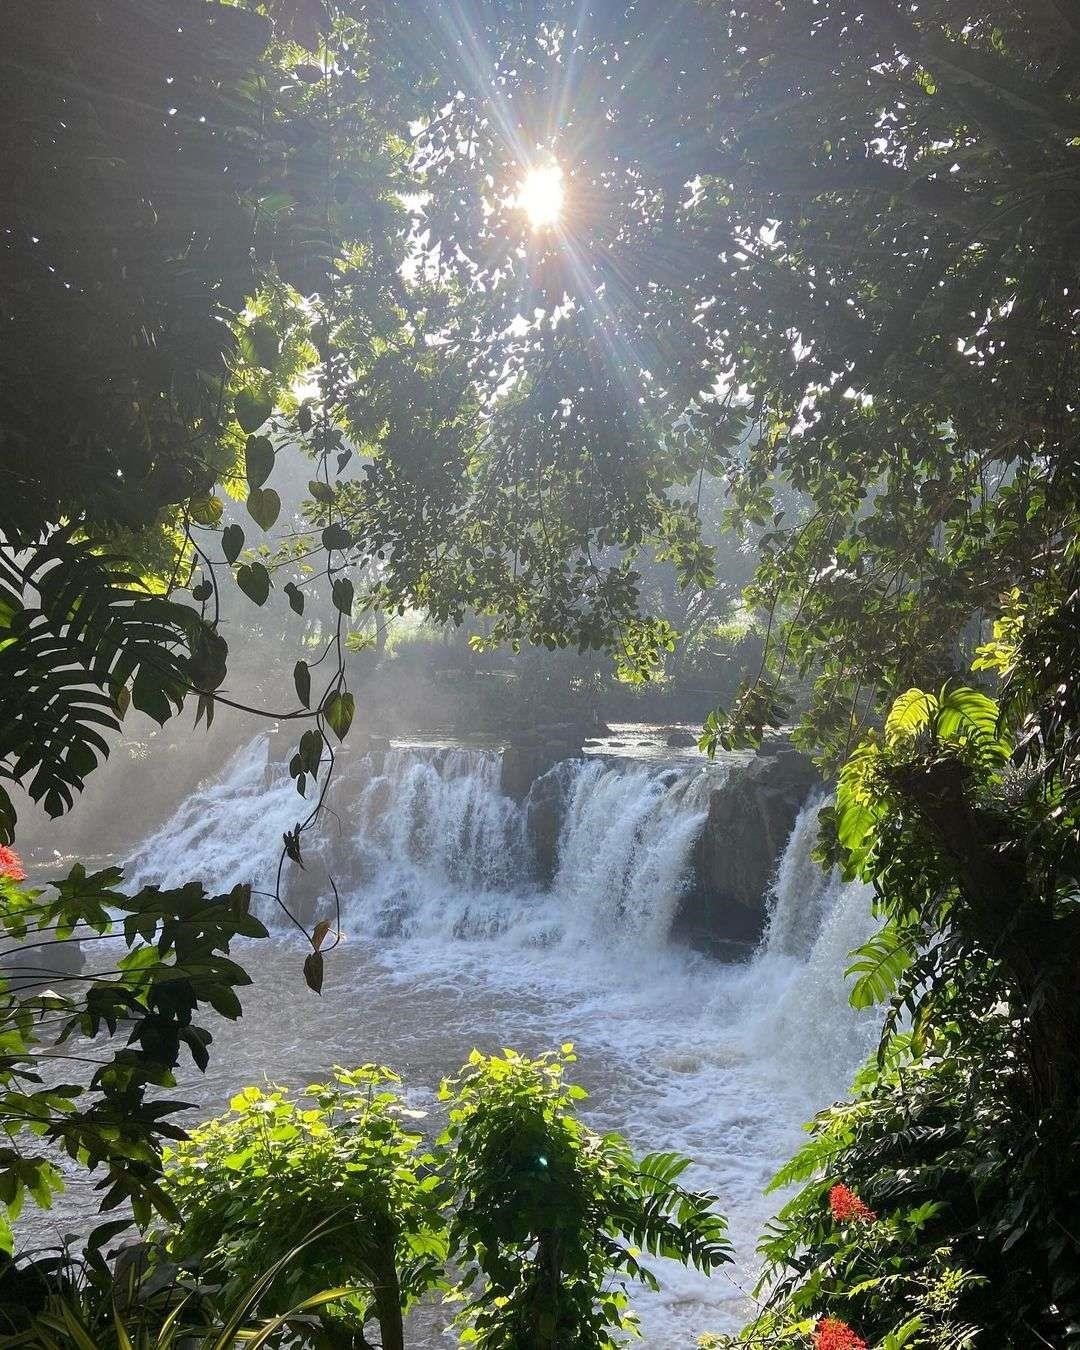 Thác Giang Điền nằm tại Đồng Nai, là một trong những điểm du lịch nổi tiếng của khu vực này với cảnh quan hùng vĩ, nước thác xiết, tạo nên một khung cảnh tuyệt đẹp và hấp dẫn cho du khách.